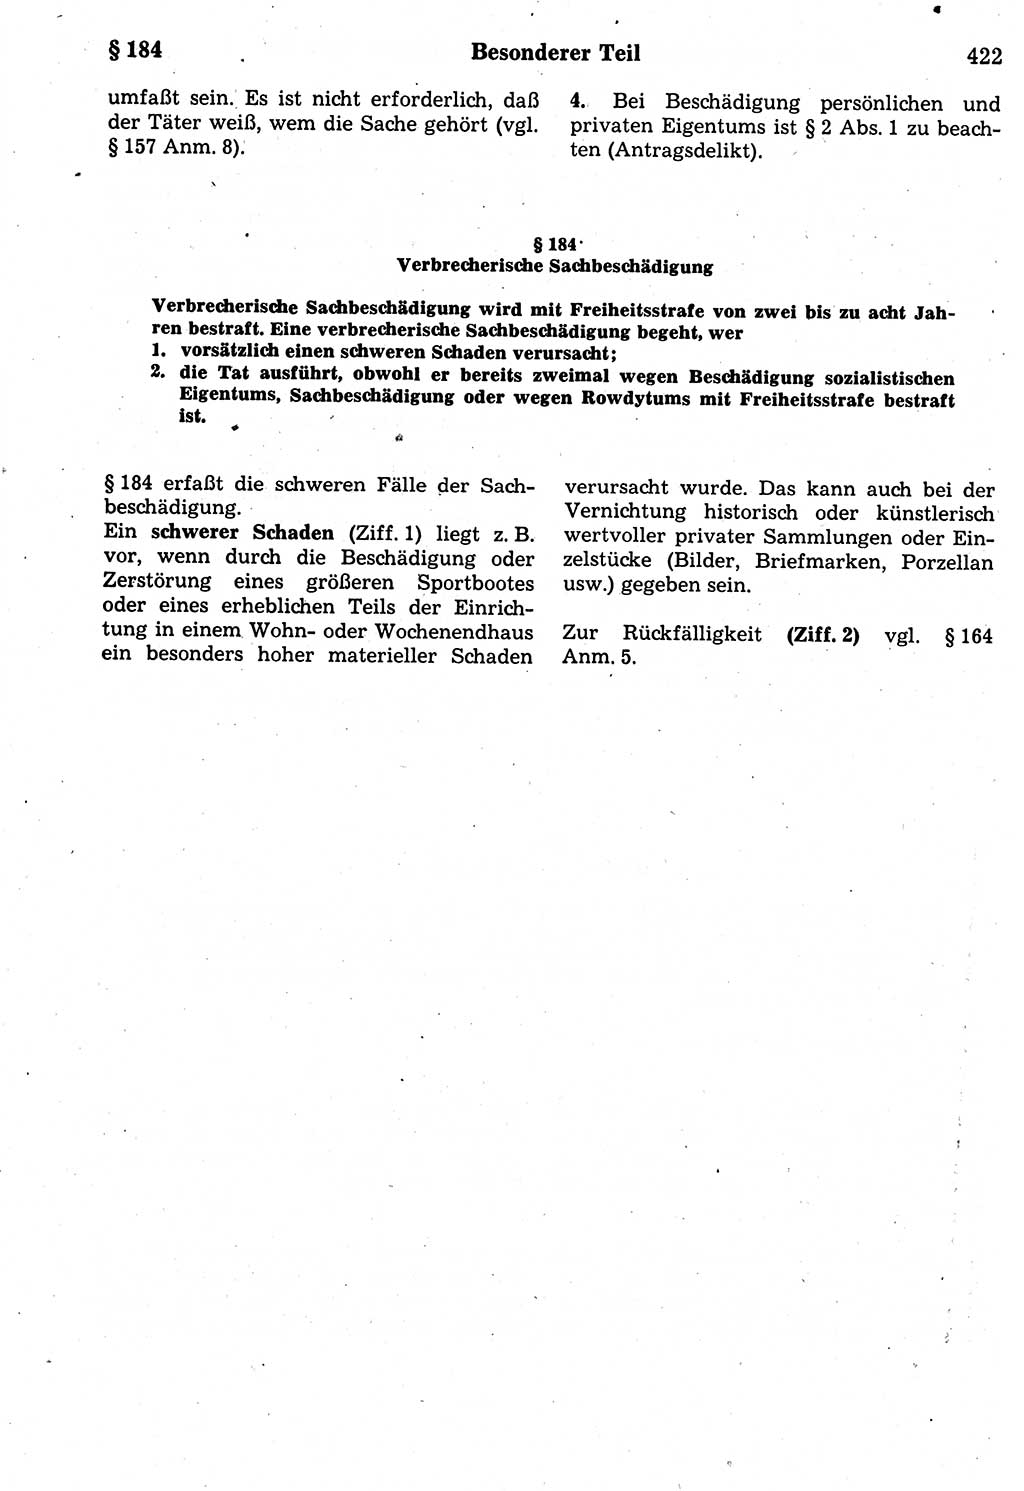 Strafrecht der Deutschen Demokratischen Republik (DDR), Kommentar zum Strafgesetzbuch (StGB) 1987, Seite 422 (Strafr. DDR Komm. StGB 1987, S. 422)